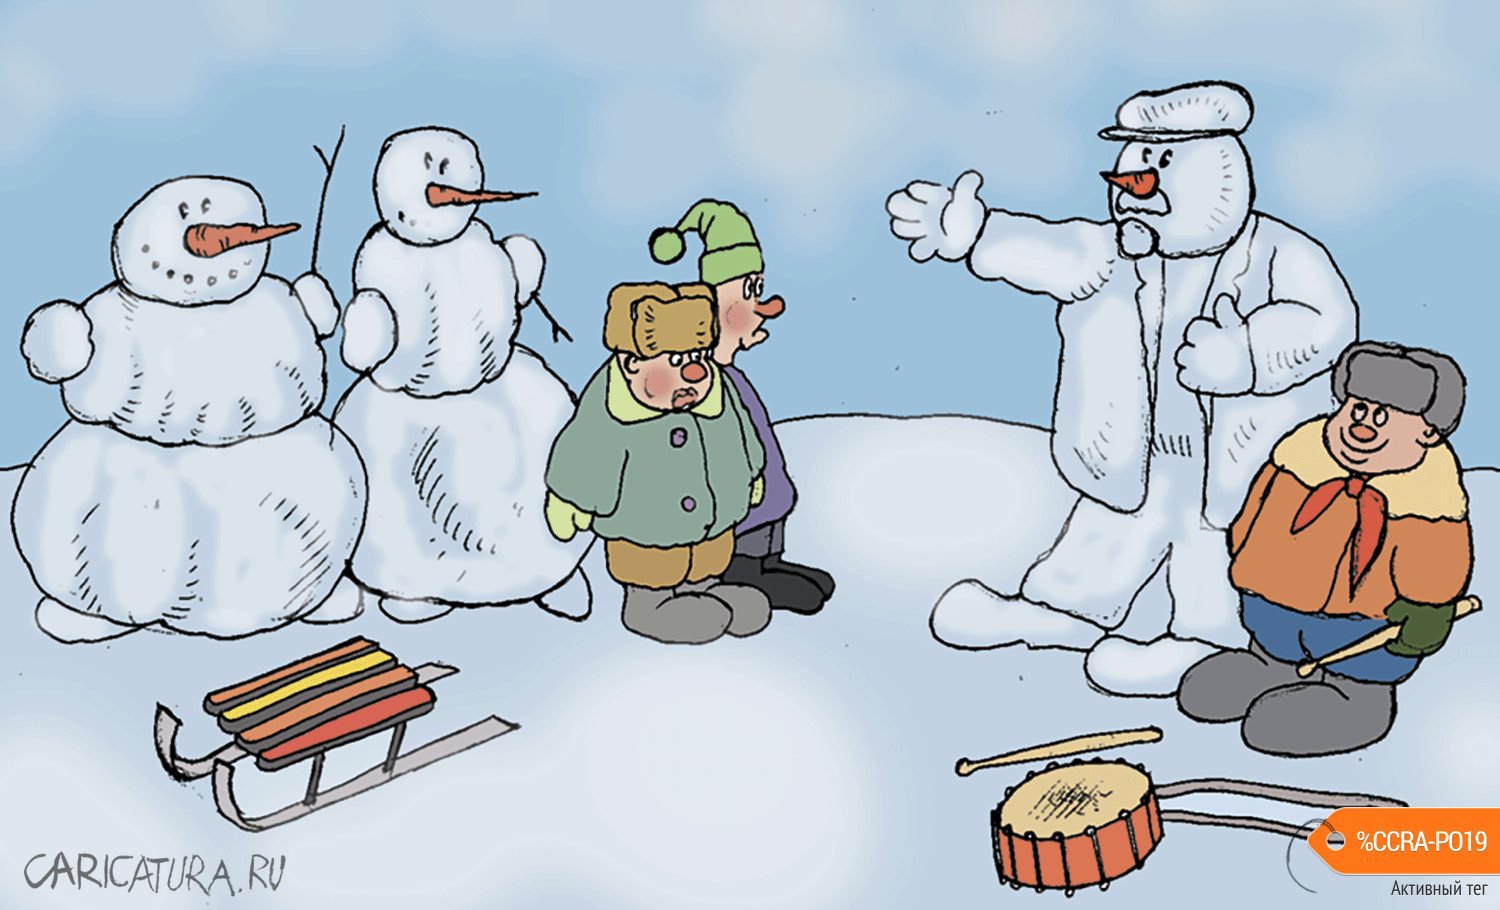 Карикатура "Снеговики", Булат Ирсаев